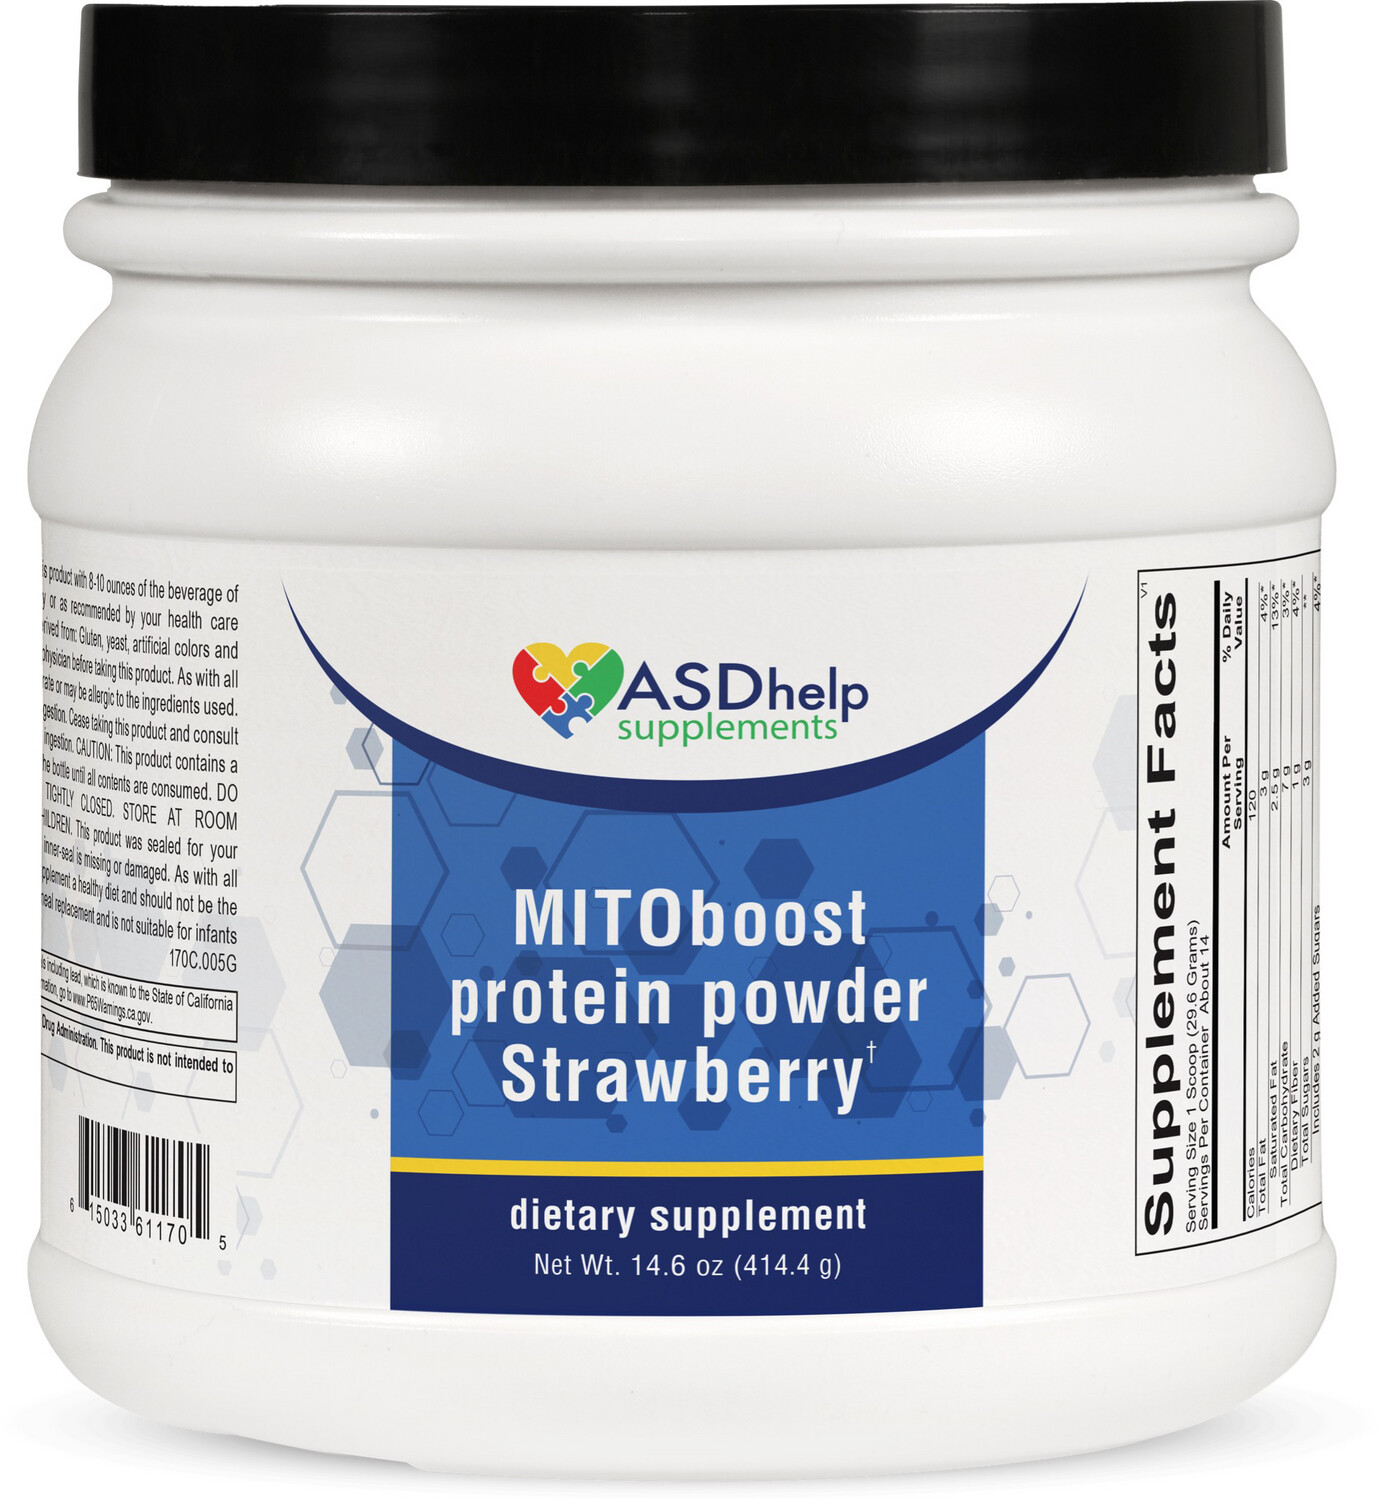 MITOboost protein powder strawberry 414 g